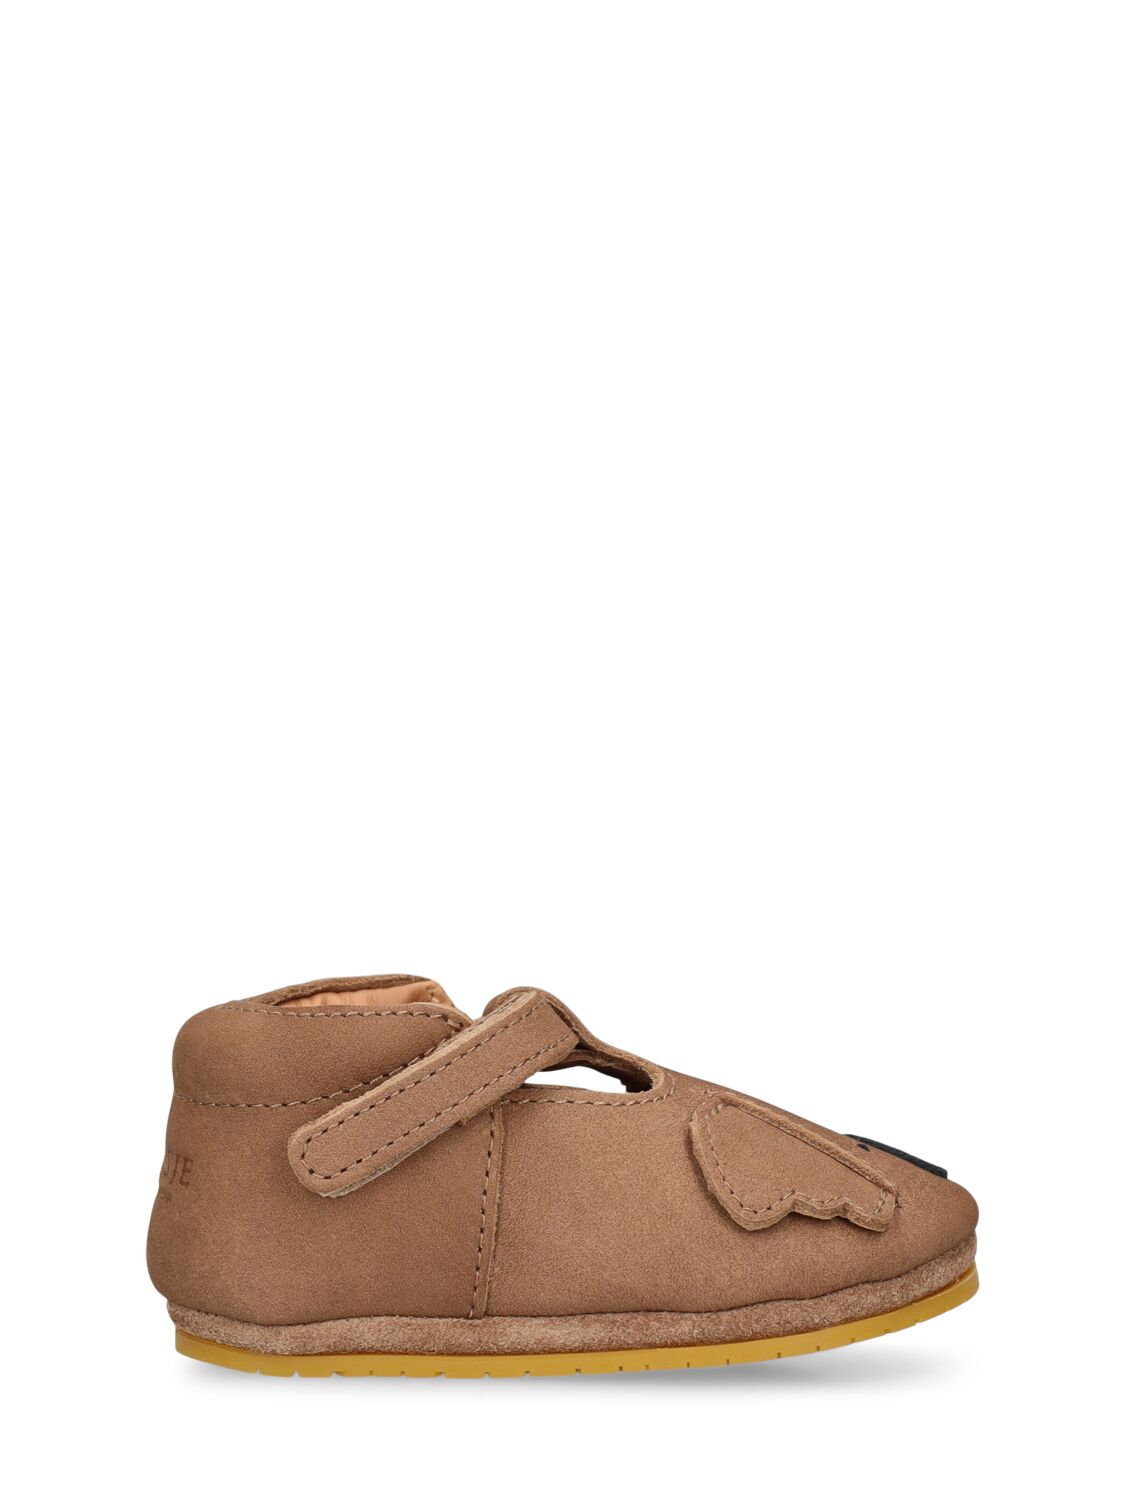 Donsje Babies' Koala Leather Pre-walker Shoes In Brown